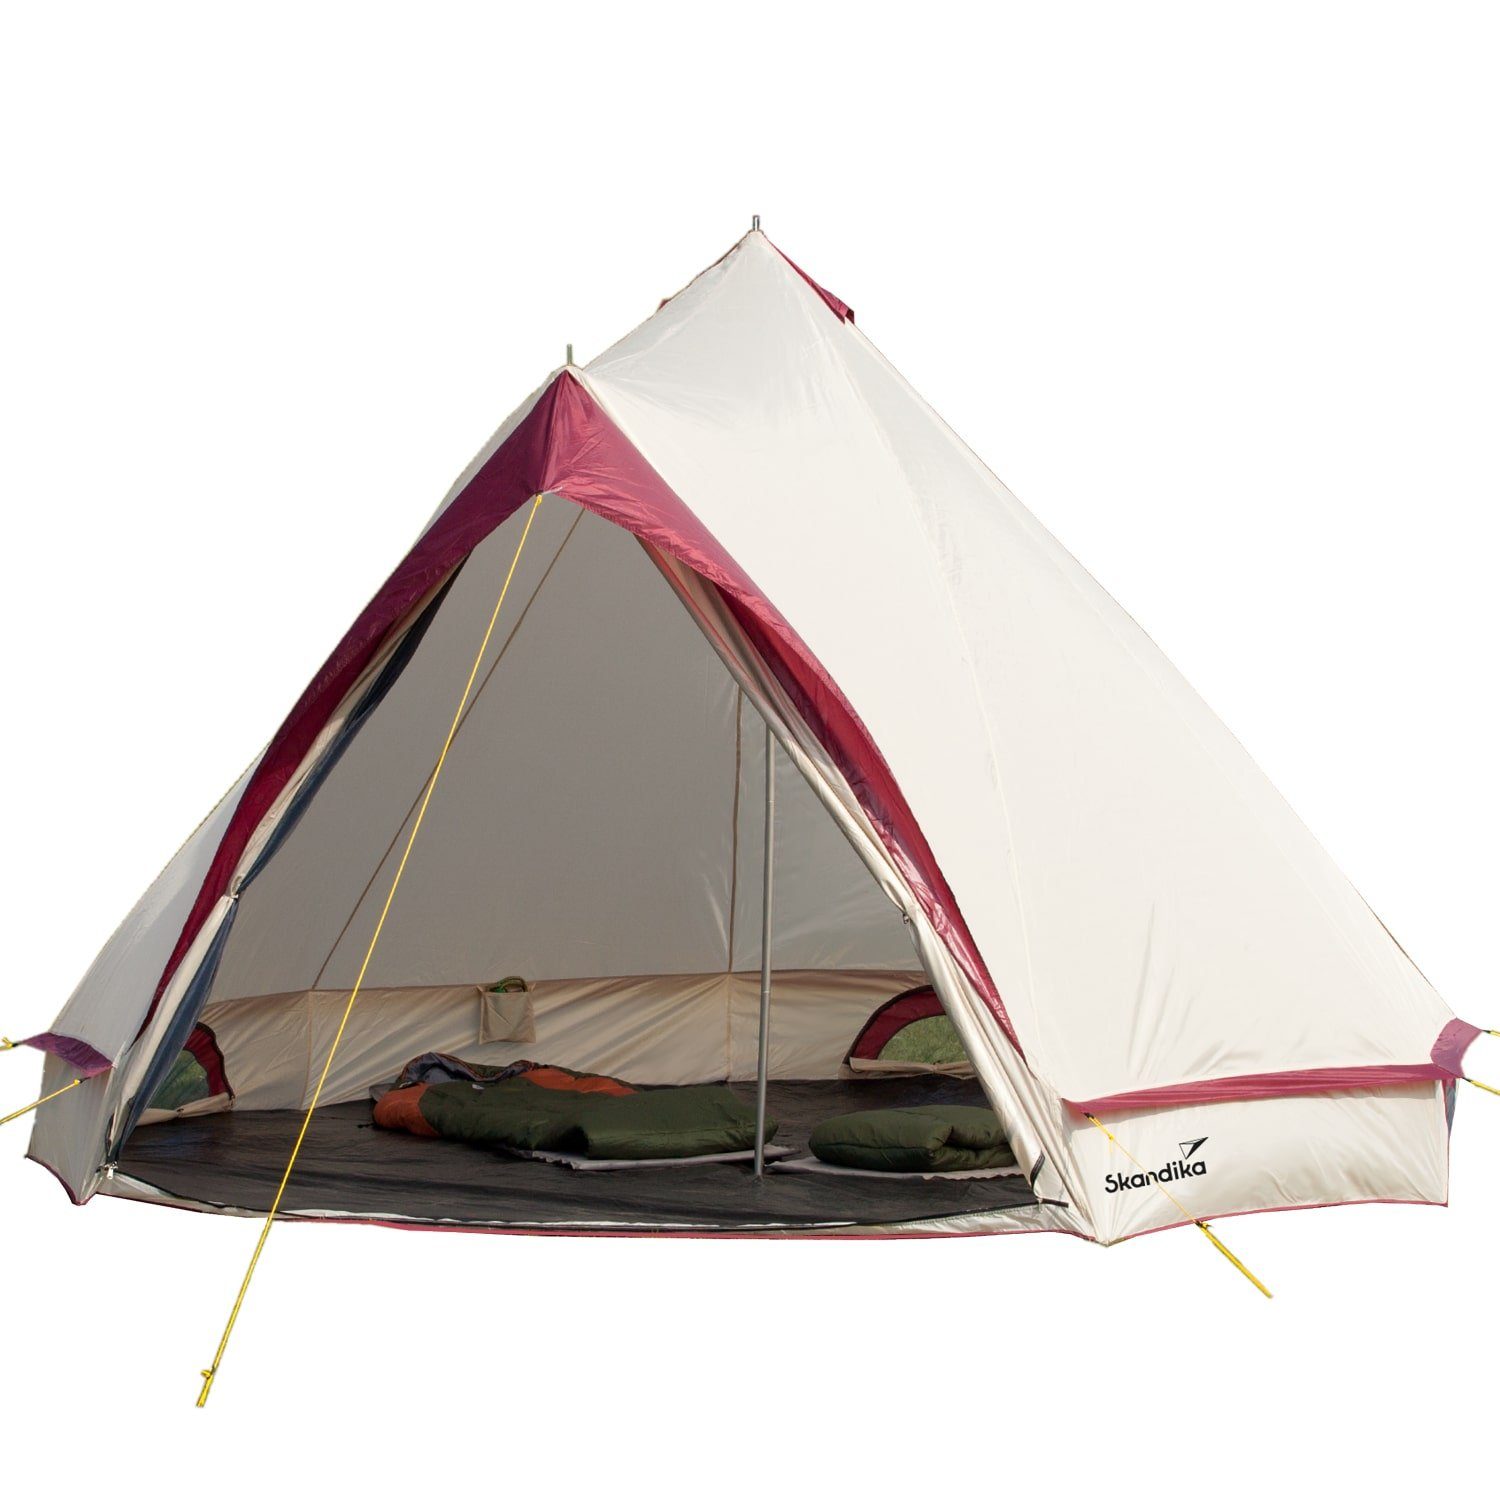 Skandika Tipi-Zelt Comanche 400 Protect Campingzelt, Personen: 8, eingenähter Zeltboden, mit/ohne Reißverschluss-System, 2,5 Stehhöhe